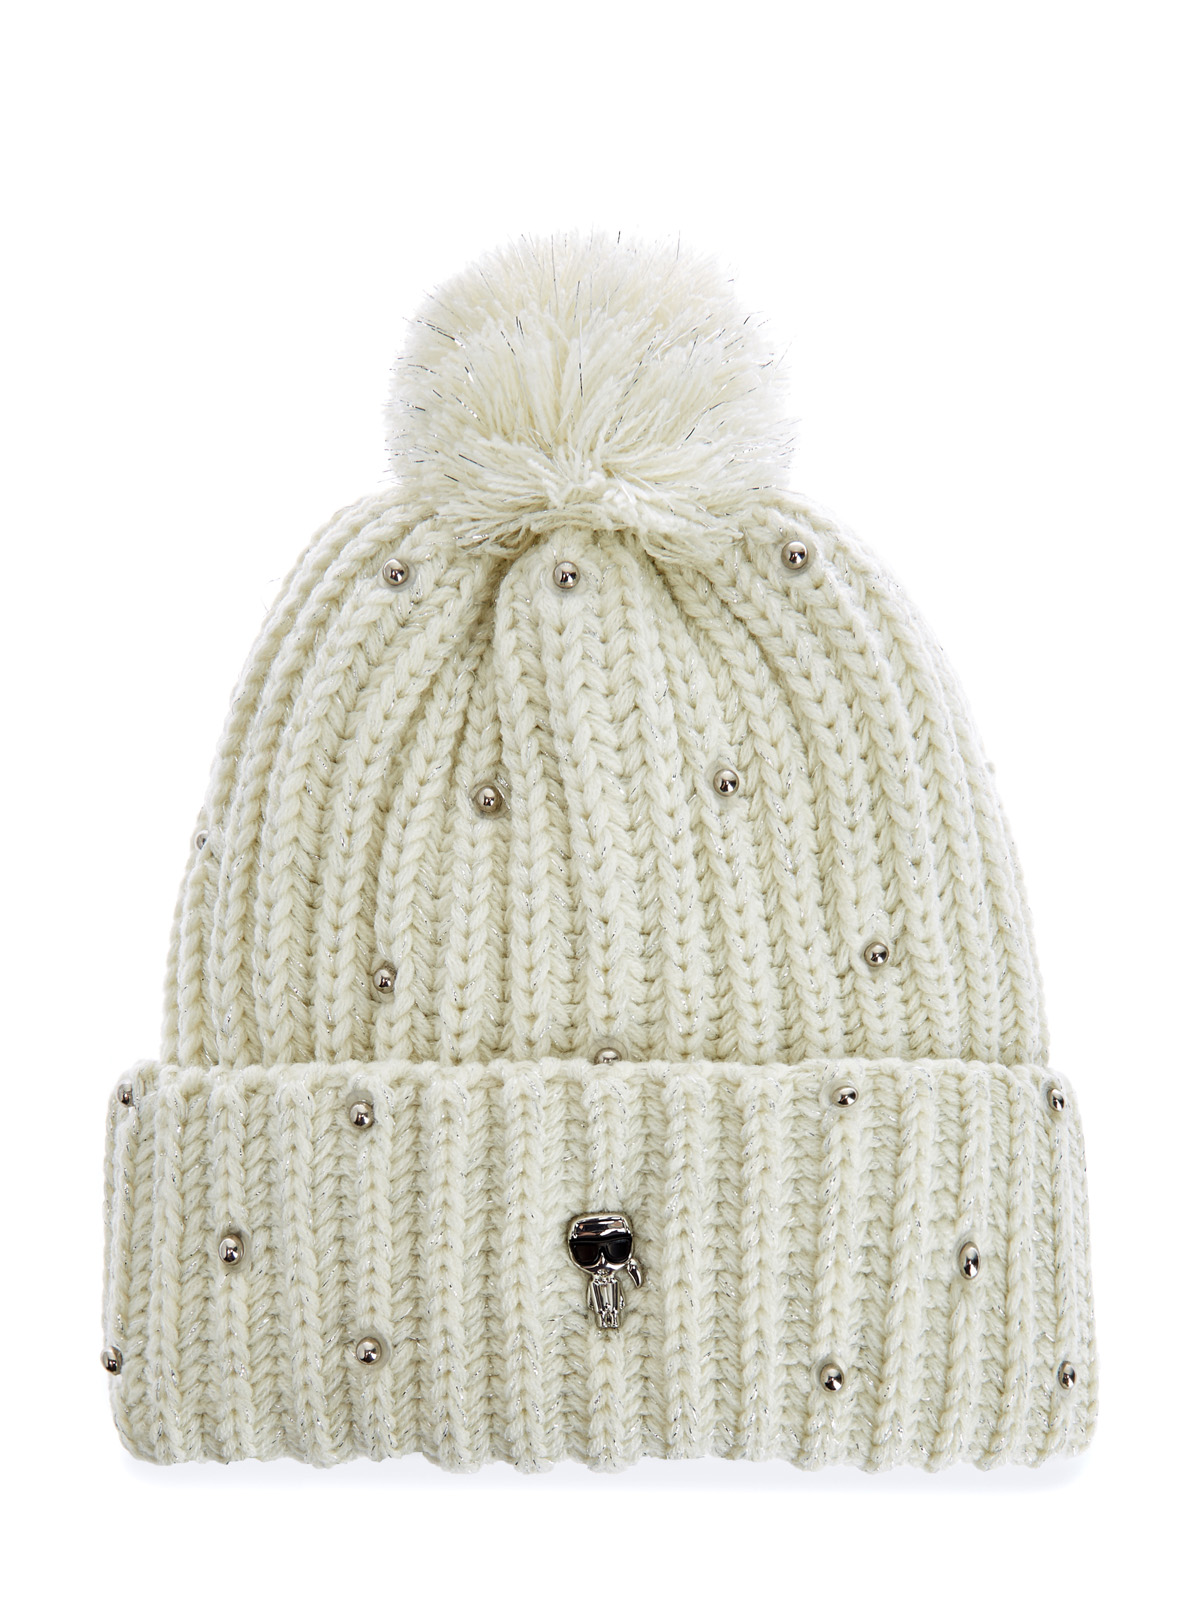 Объемная шапка с нитью ламе и металлизированным декором KARL LAGERFELD, цвет белый, размер S;L